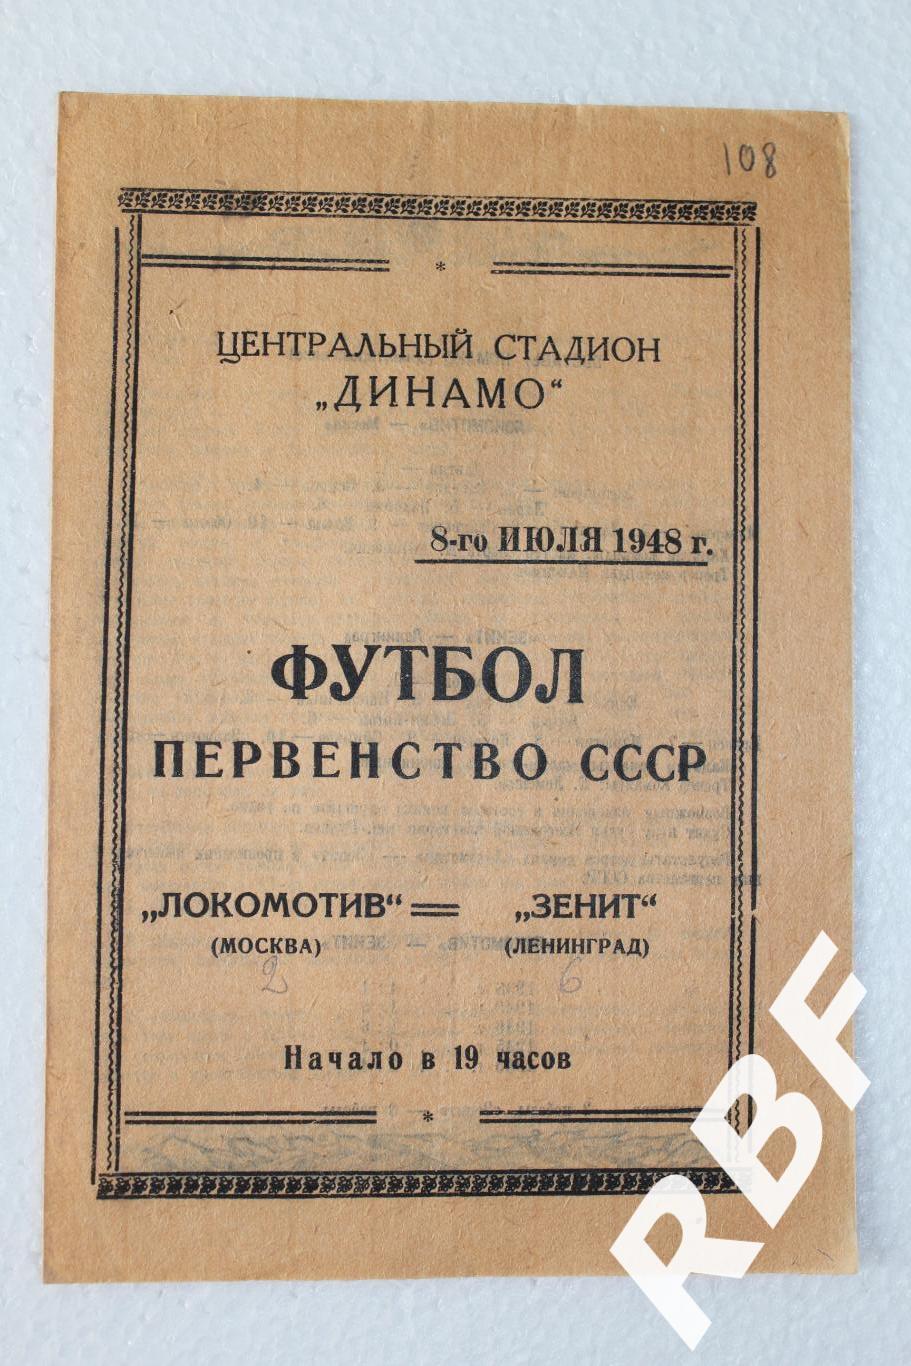 Локомотив Москва - Зенит Ленинград,8 июля 1948